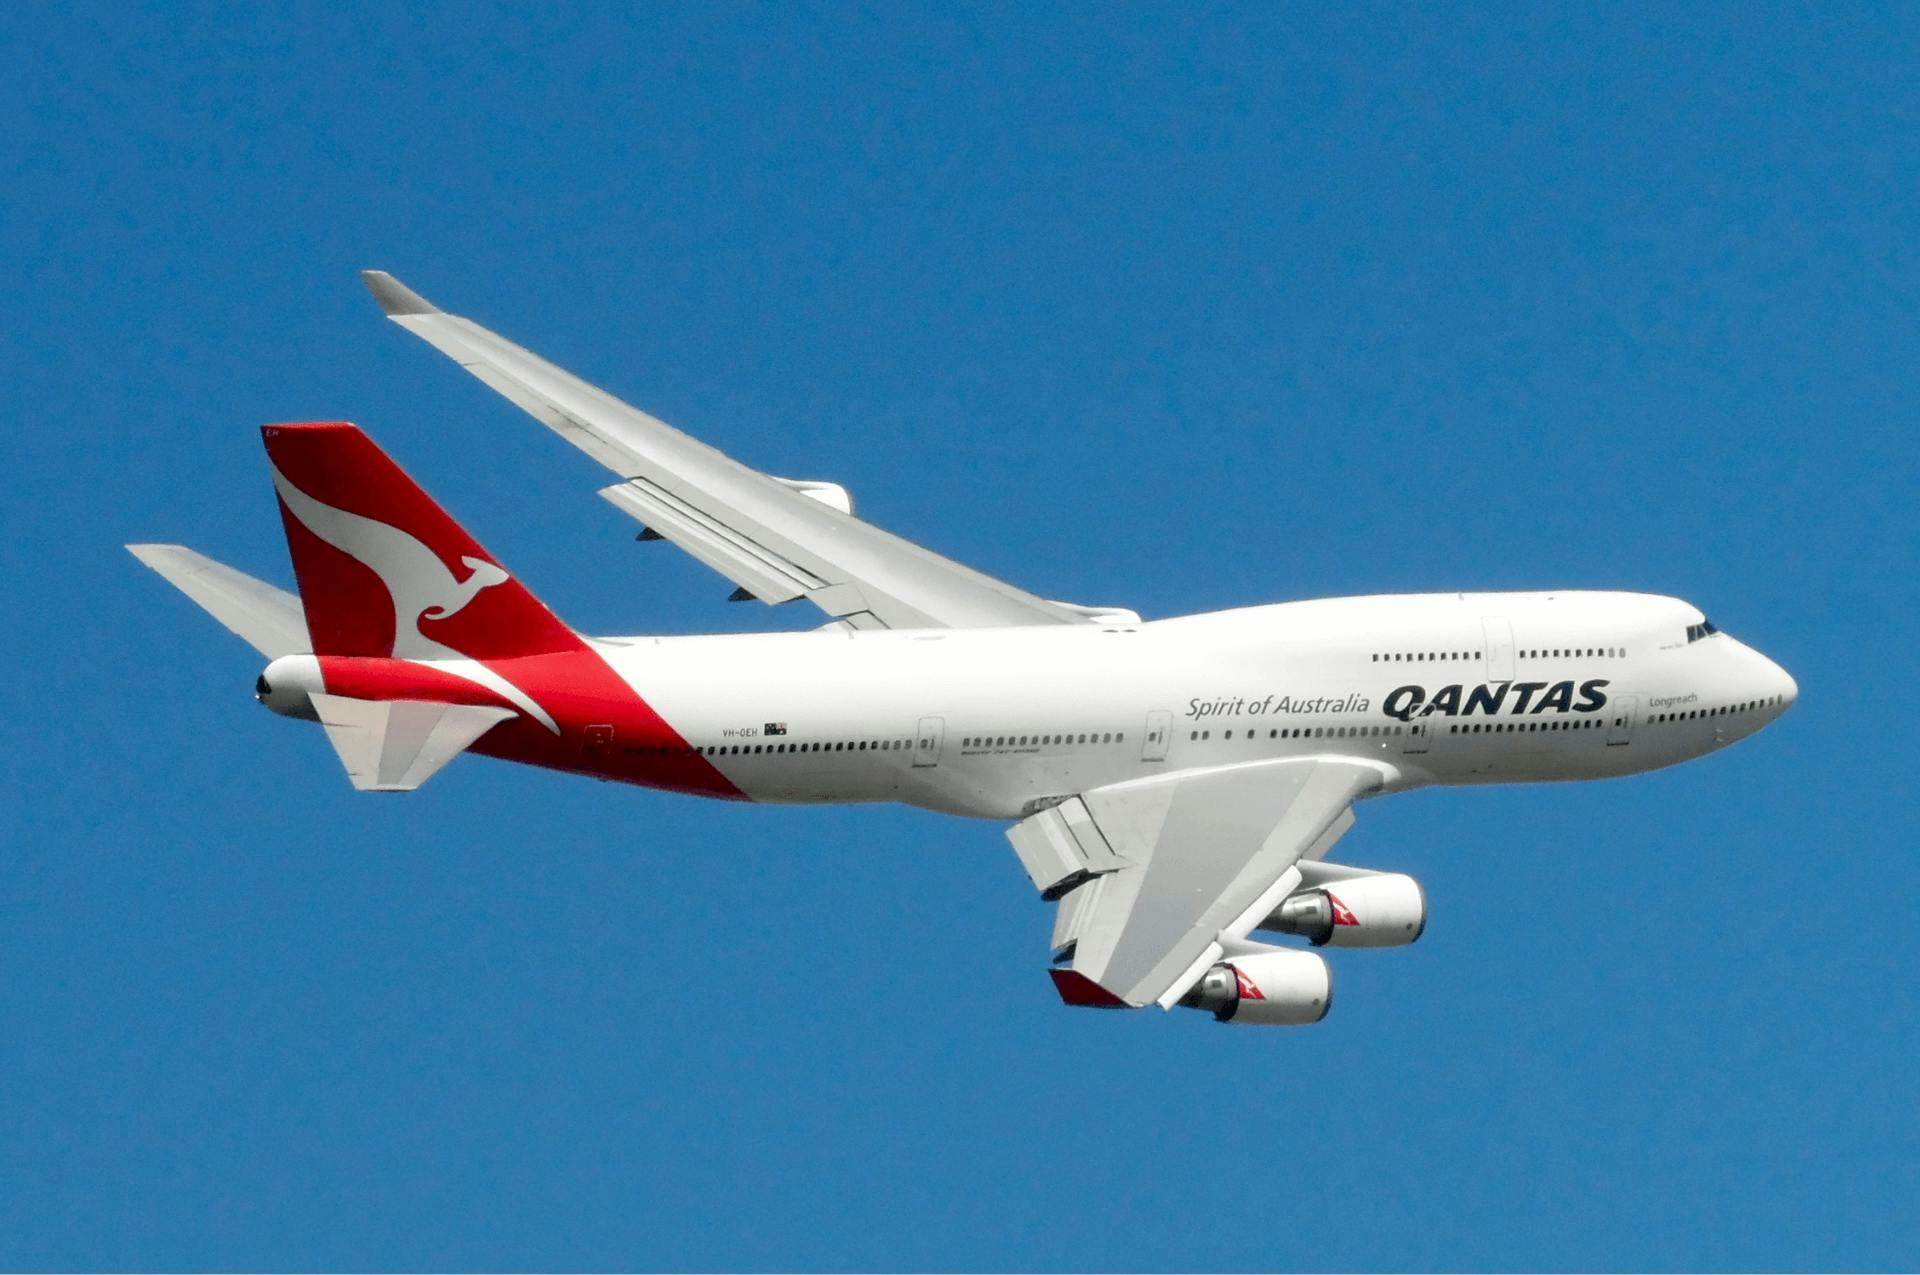 Qantas Aircraft in air